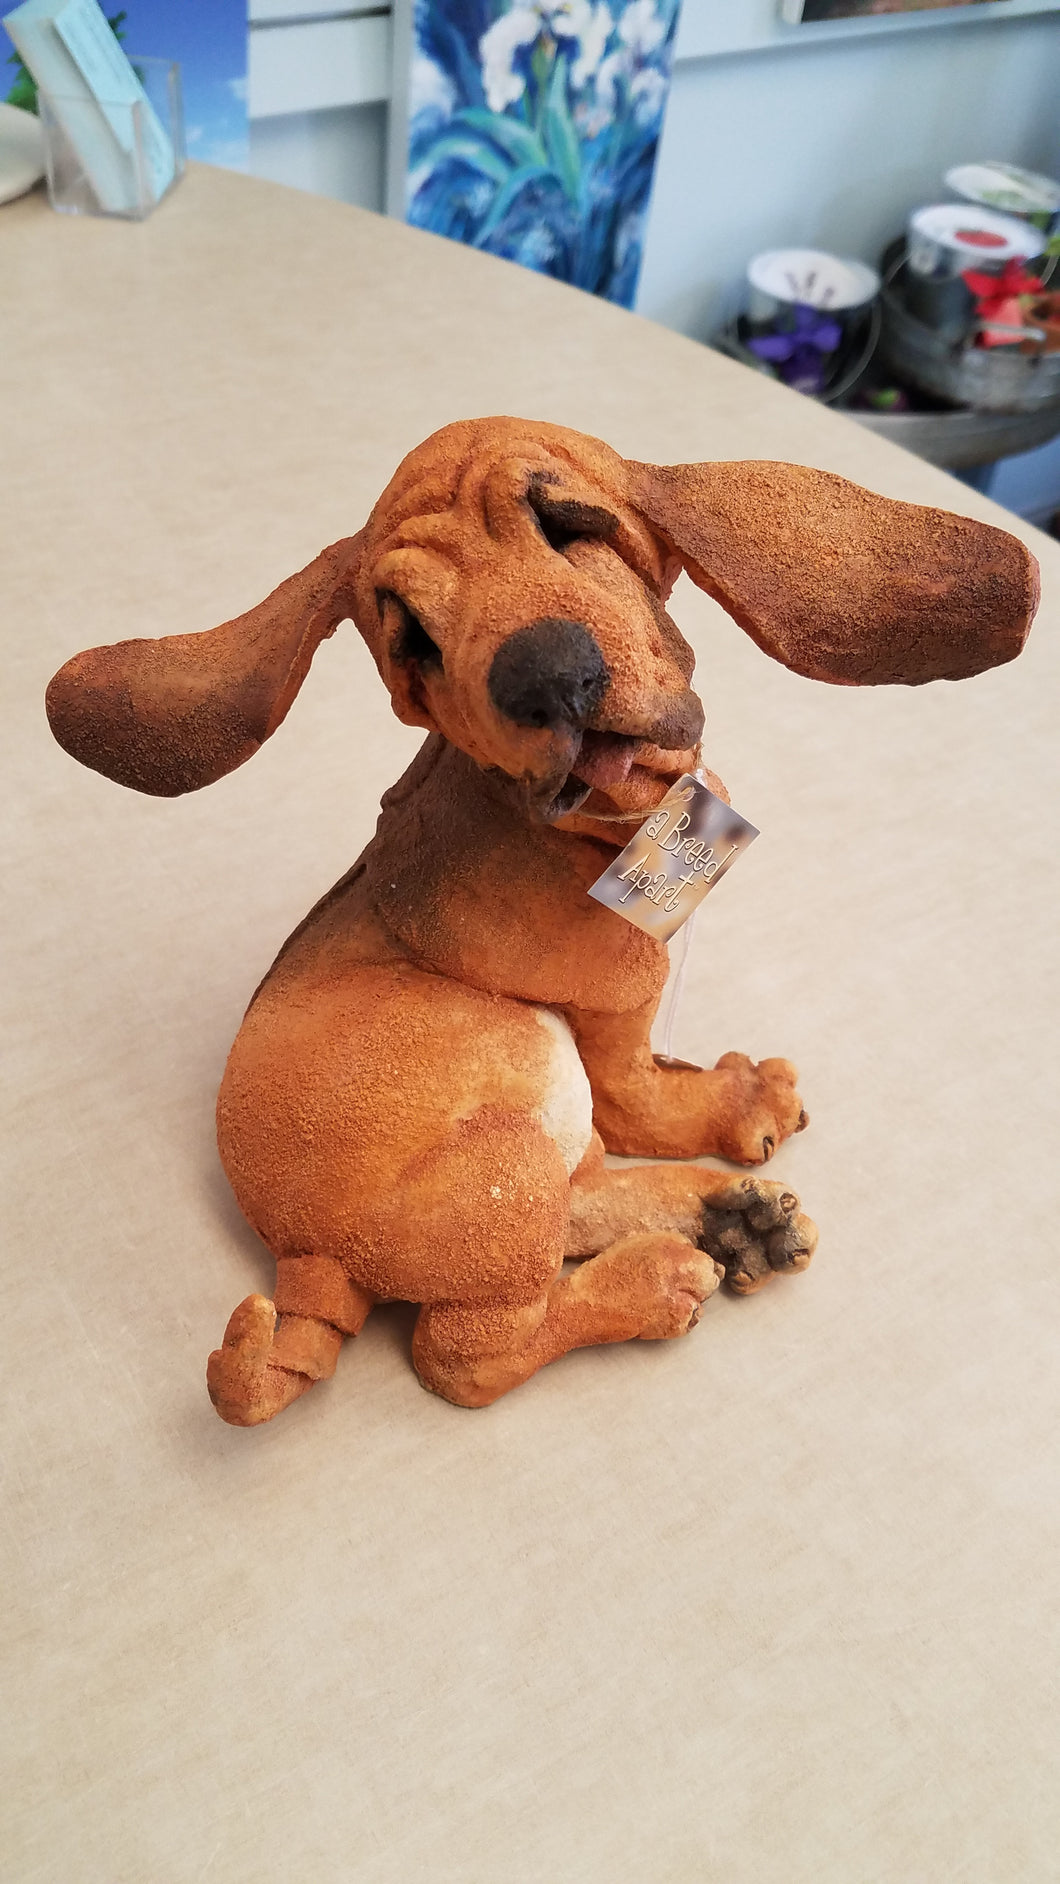 bloodhound stuffed animal